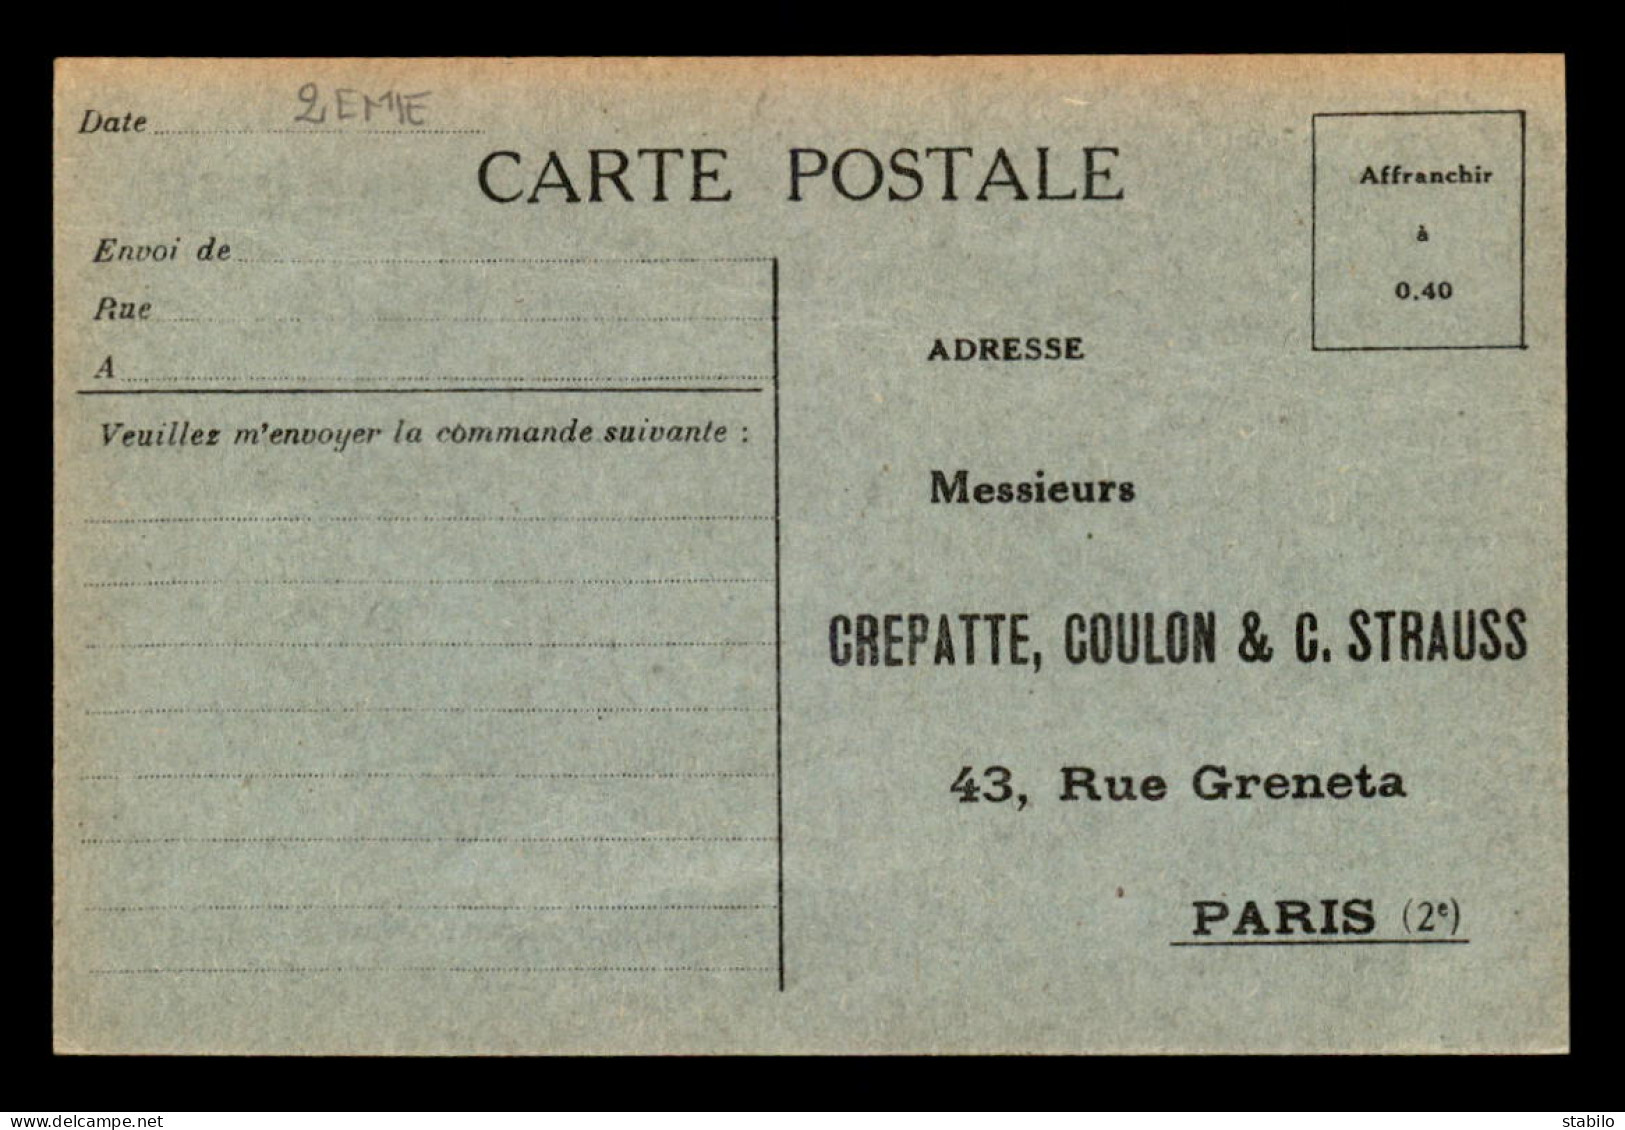 75 - PARIS 2EME - CREPATTE, COULON & C. STRAUSS, 43 RUE GRENETA - CARTE DE SERVICE - Arrondissement: 02